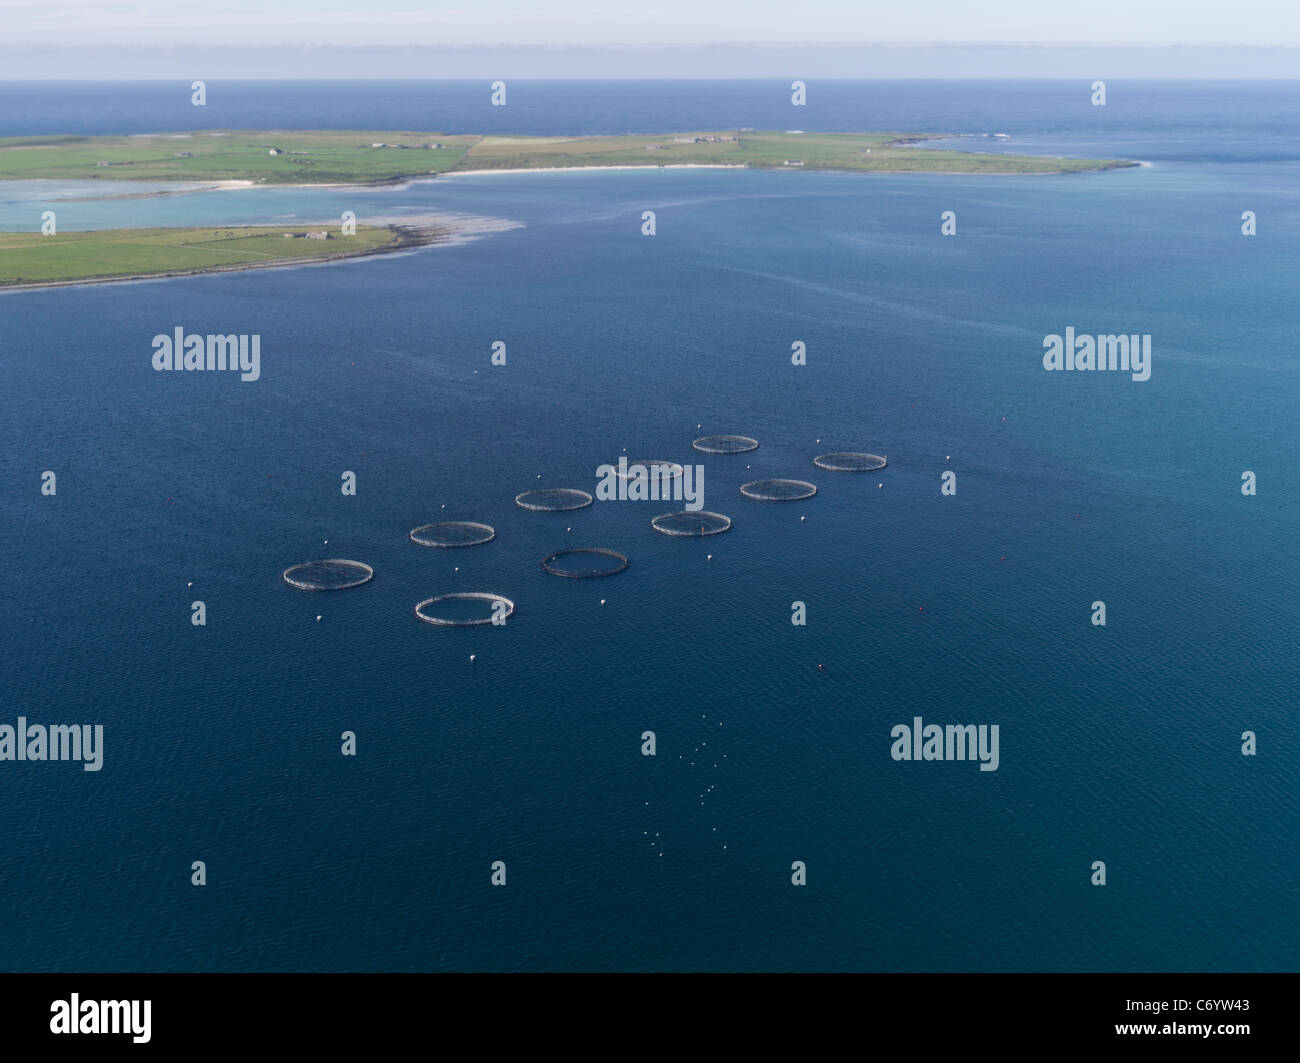 dh Granja de Pescado de Salmón Escocés WESTRAY ORKNEY Islands Granja de pescado circular jaulas desde arriba vista aérea remota de la isla escocia Foto de stock